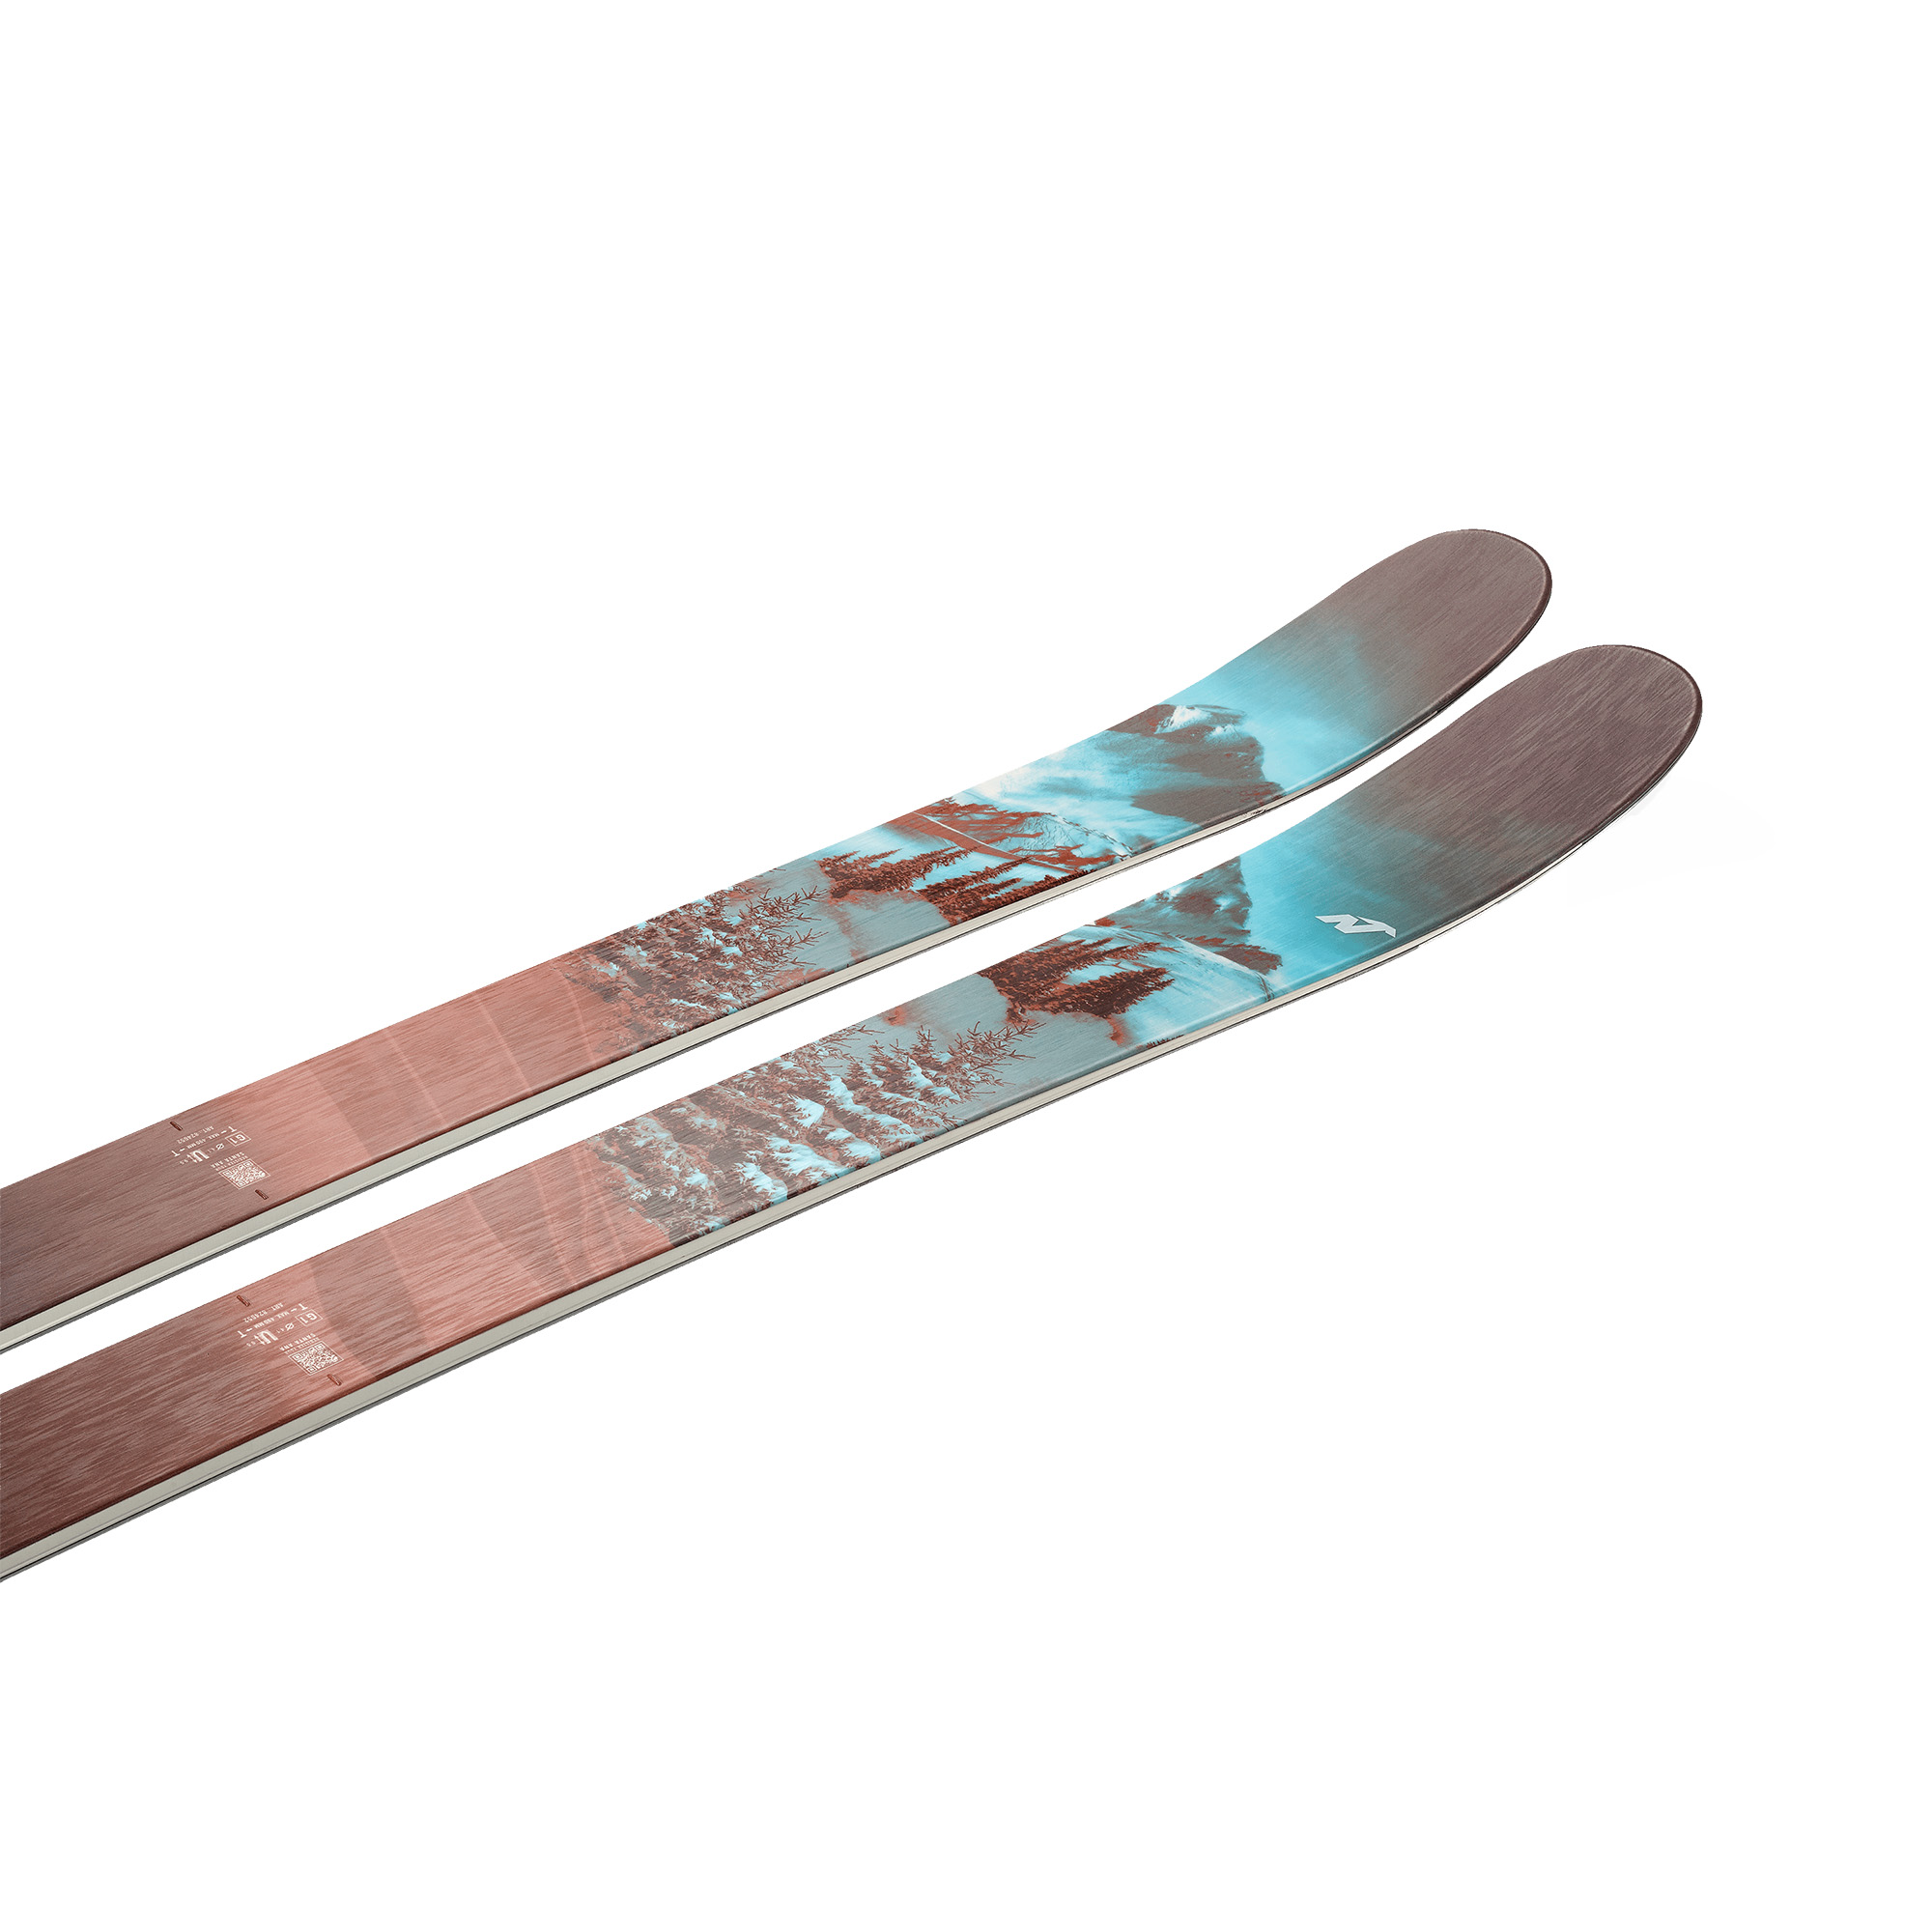 Nordica Santa Ana 104 Free Women's Skis